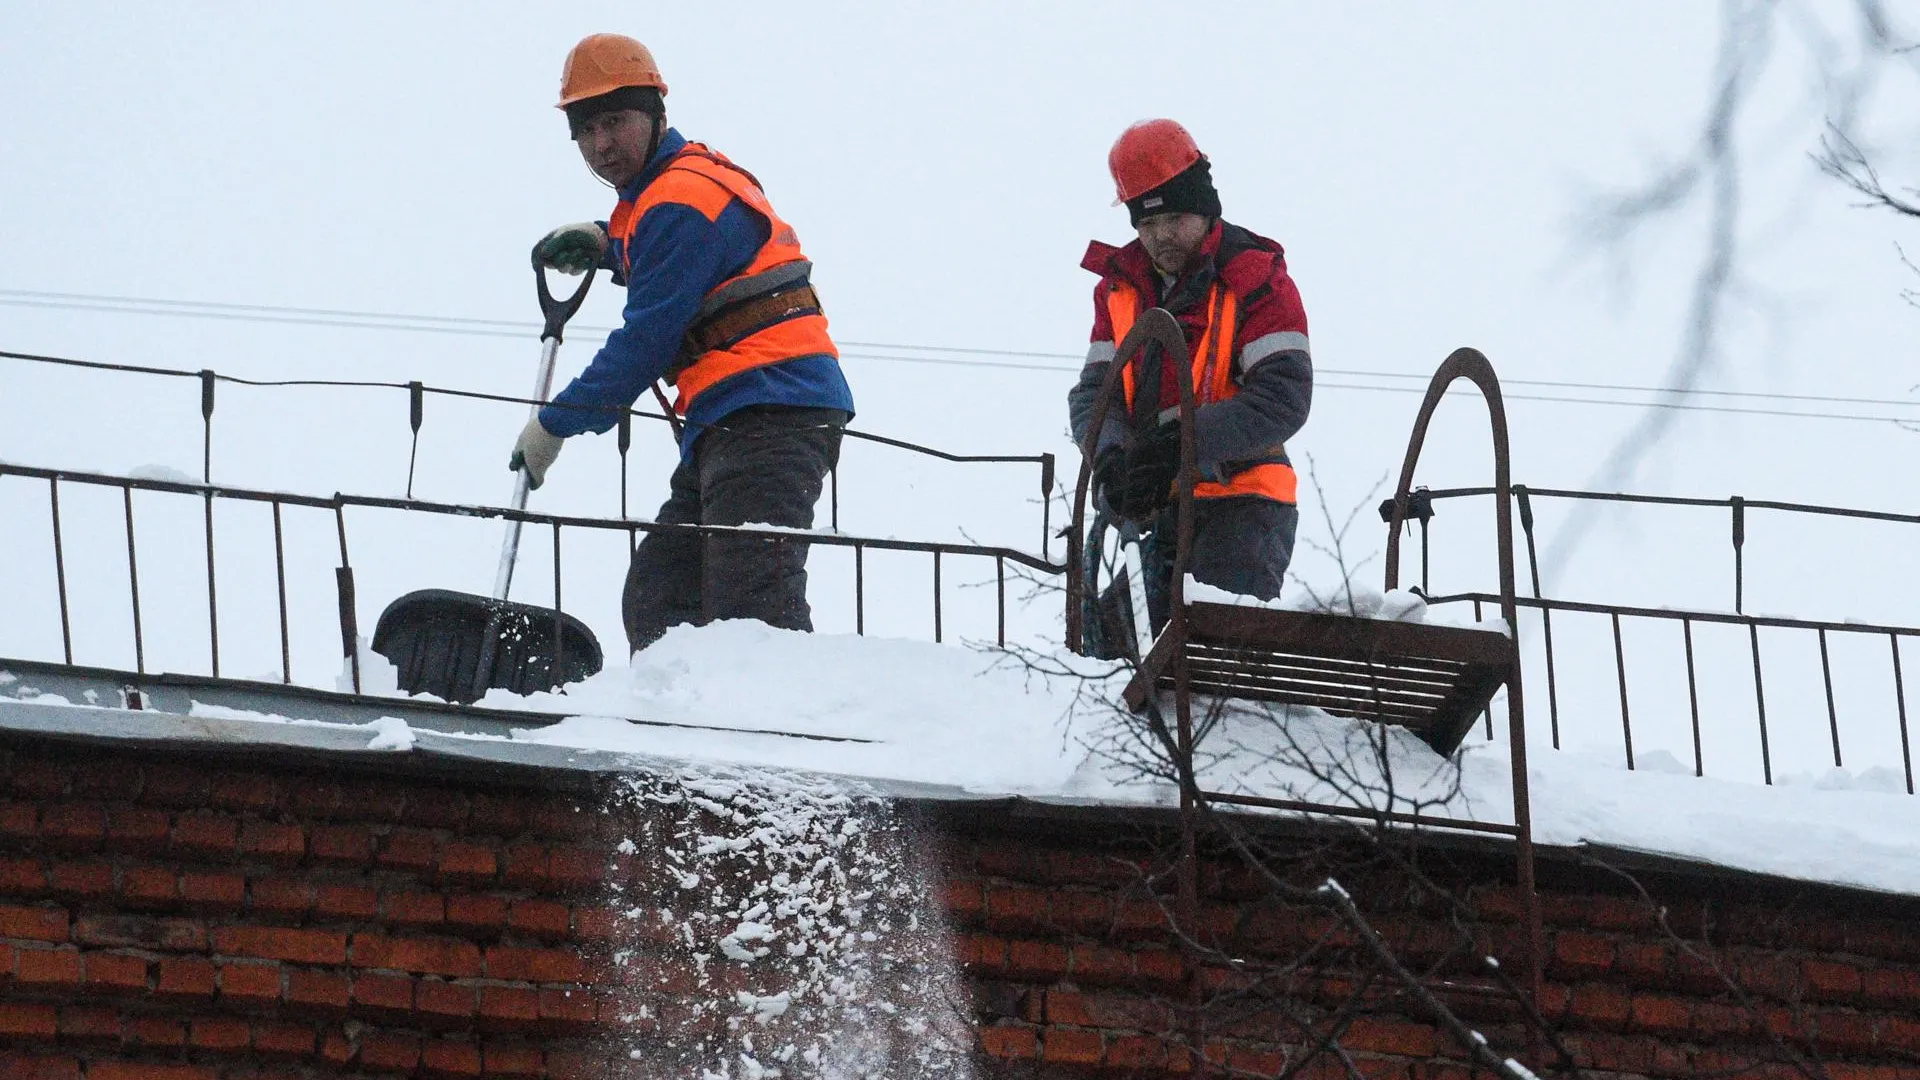 Baza: большая лавина снега упала с крыши в Химках и едва не покалечила людей